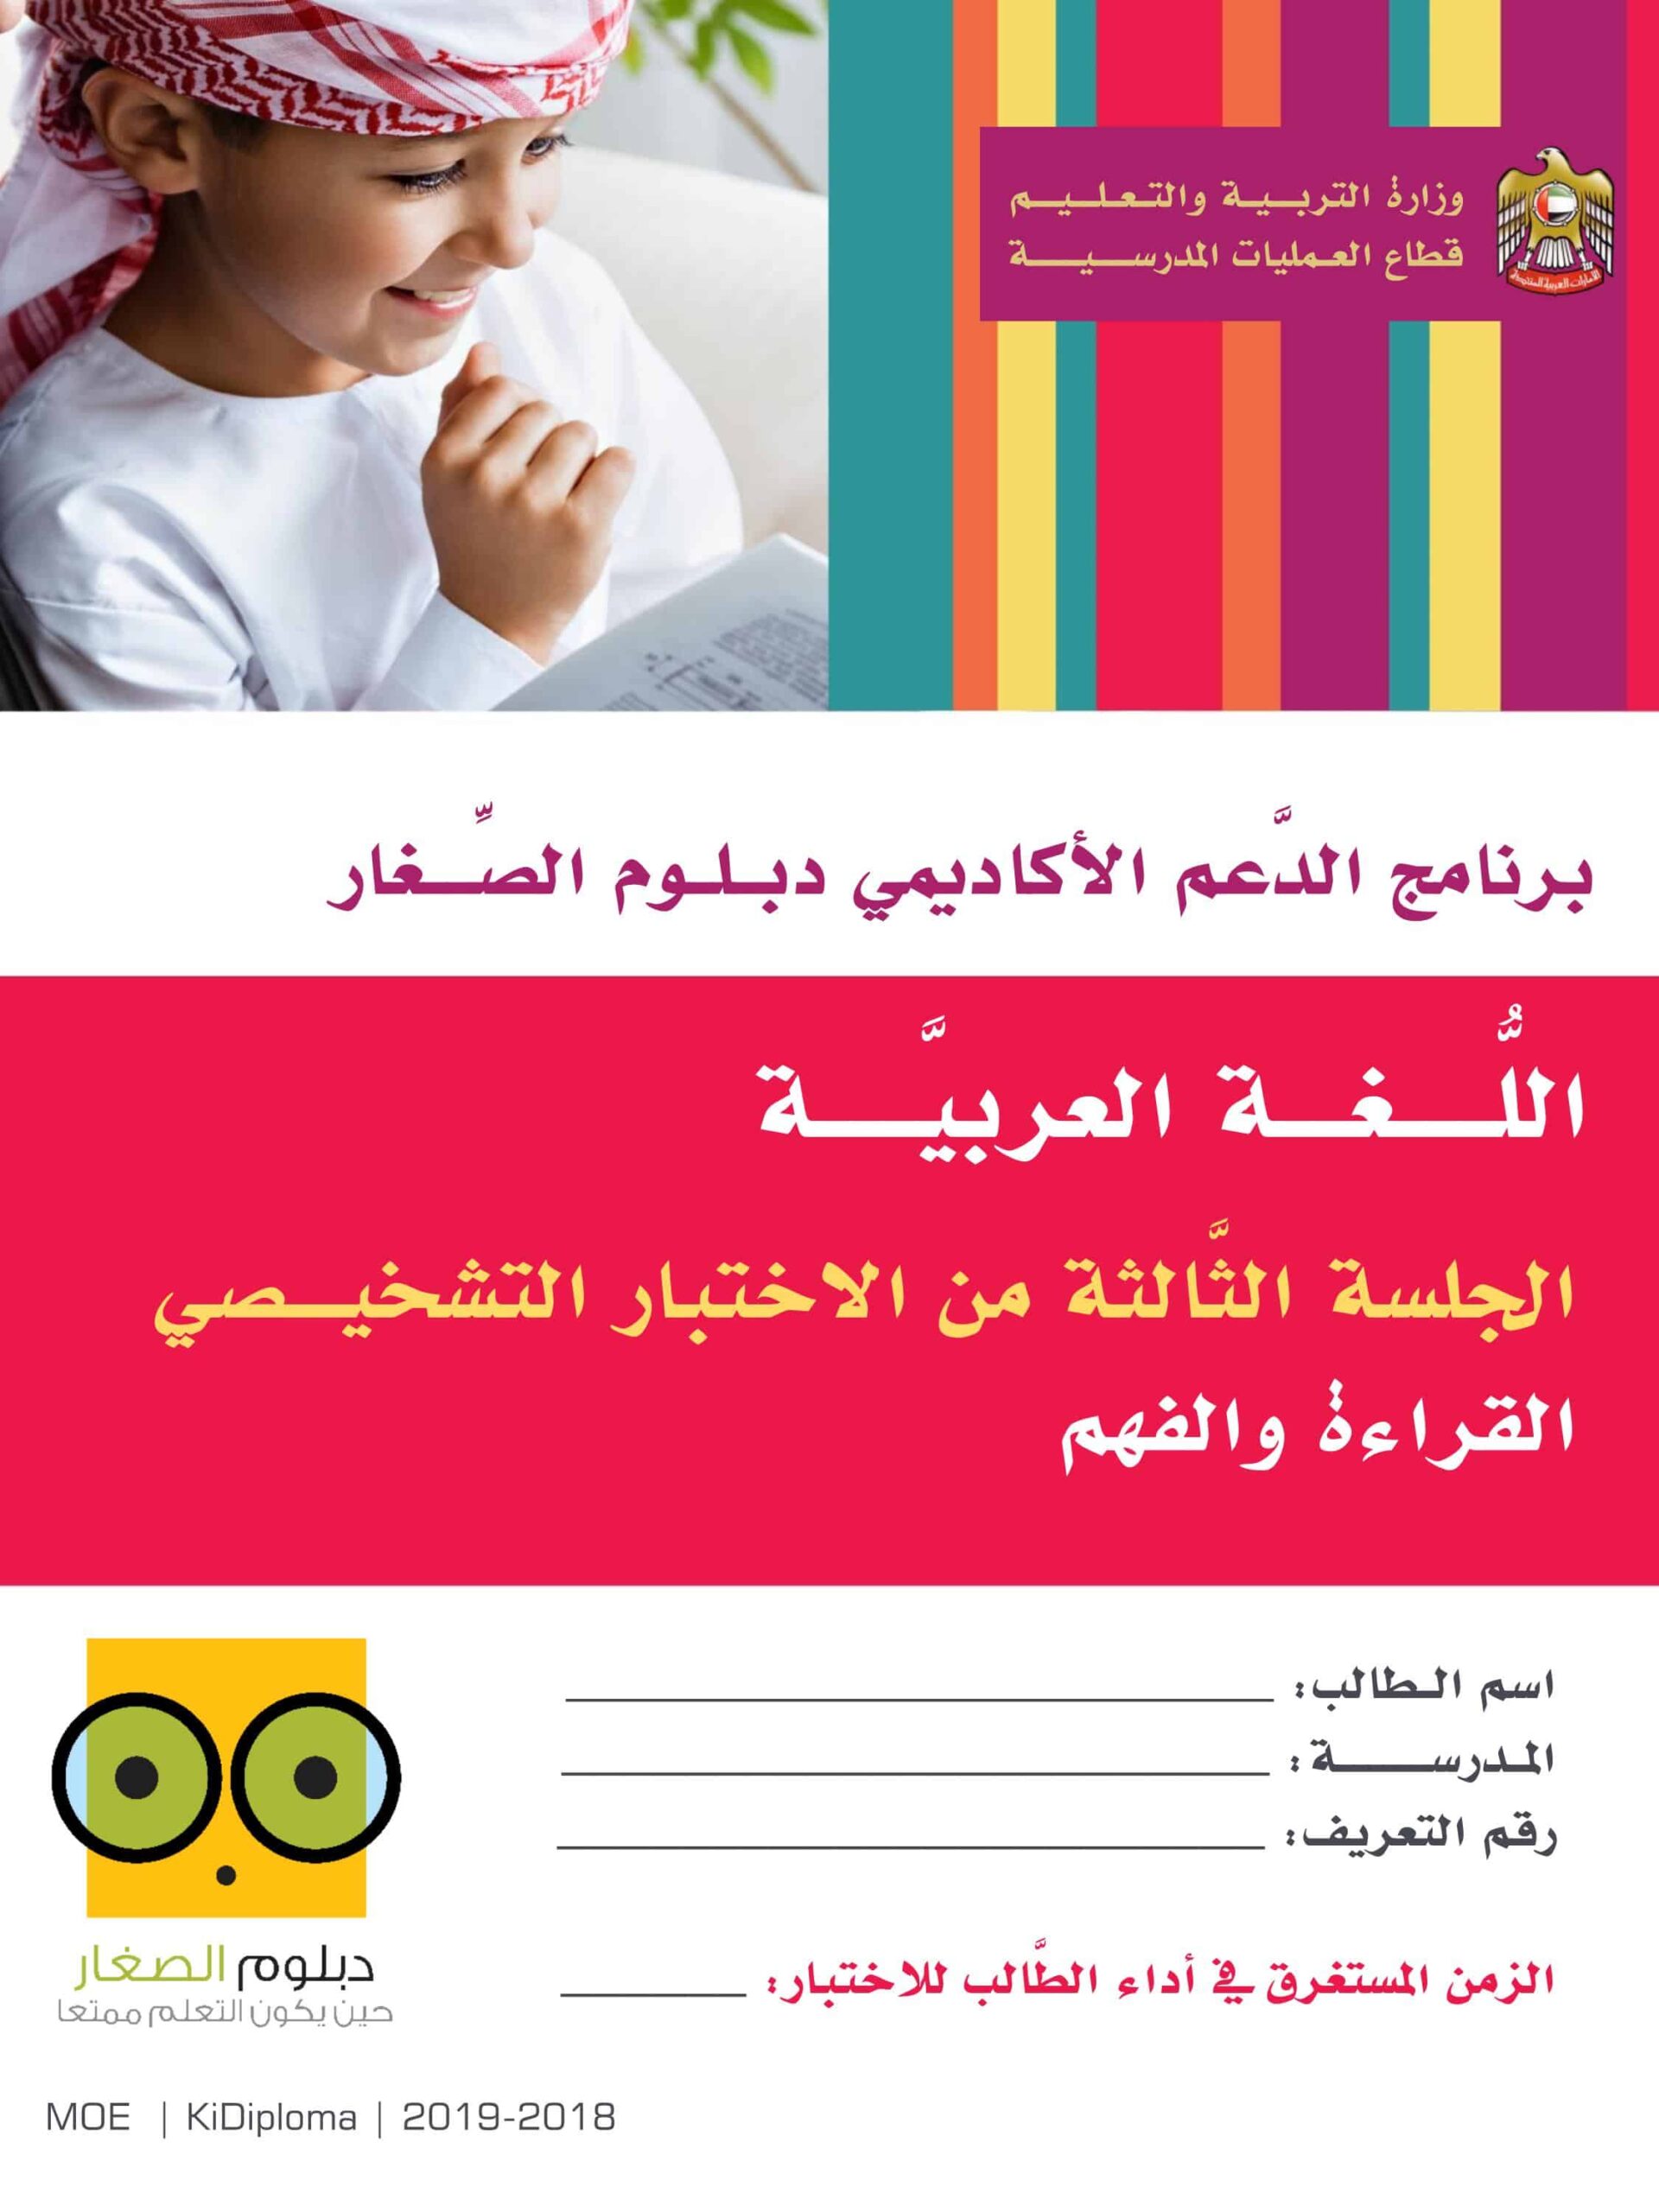 الاختبار التشخيصي القراءة والفهم دبلوم الصغار اللغة العربية الصف الثاني